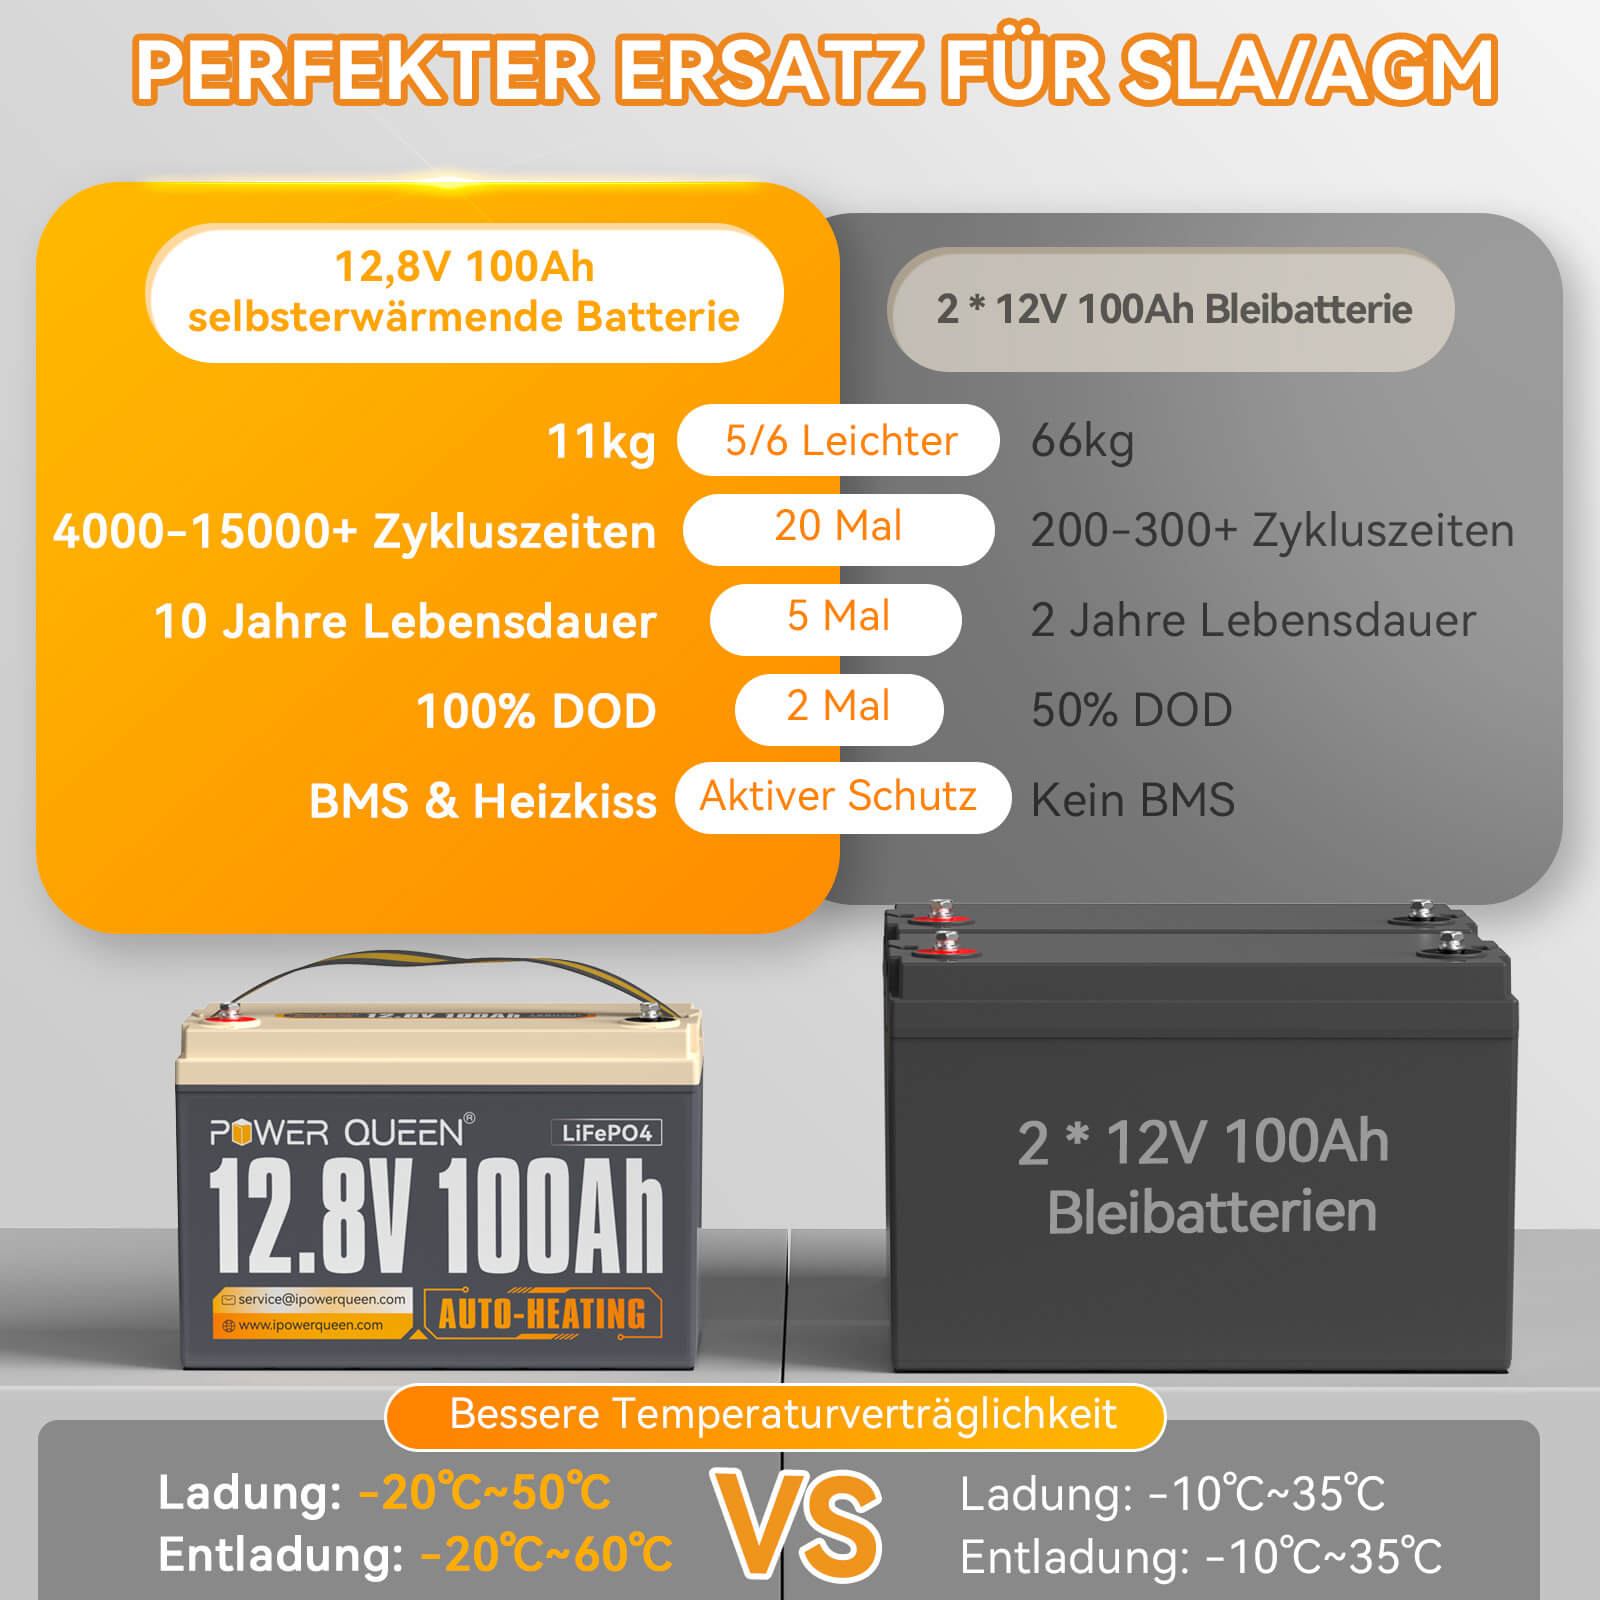 【Como nuevo】Batería LiFePO4 autocalentable Power Queen de 12,8 V y 100 Ah, BMS integrado de 100 A